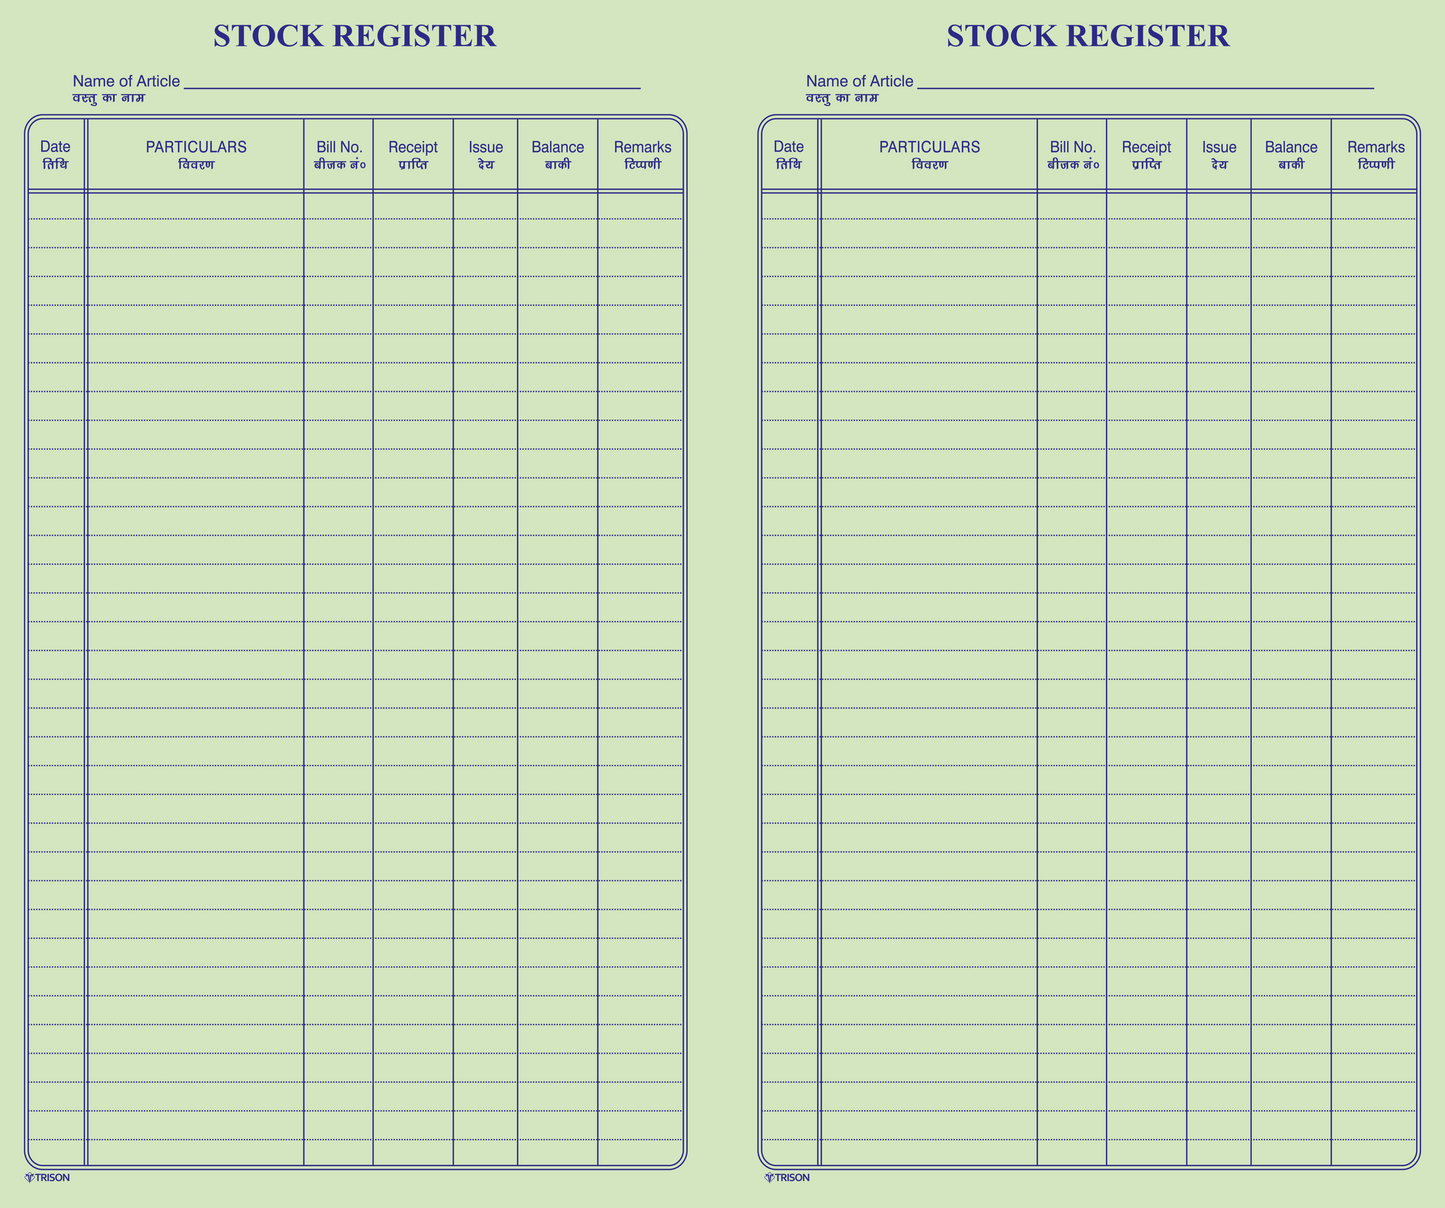 Stock Register